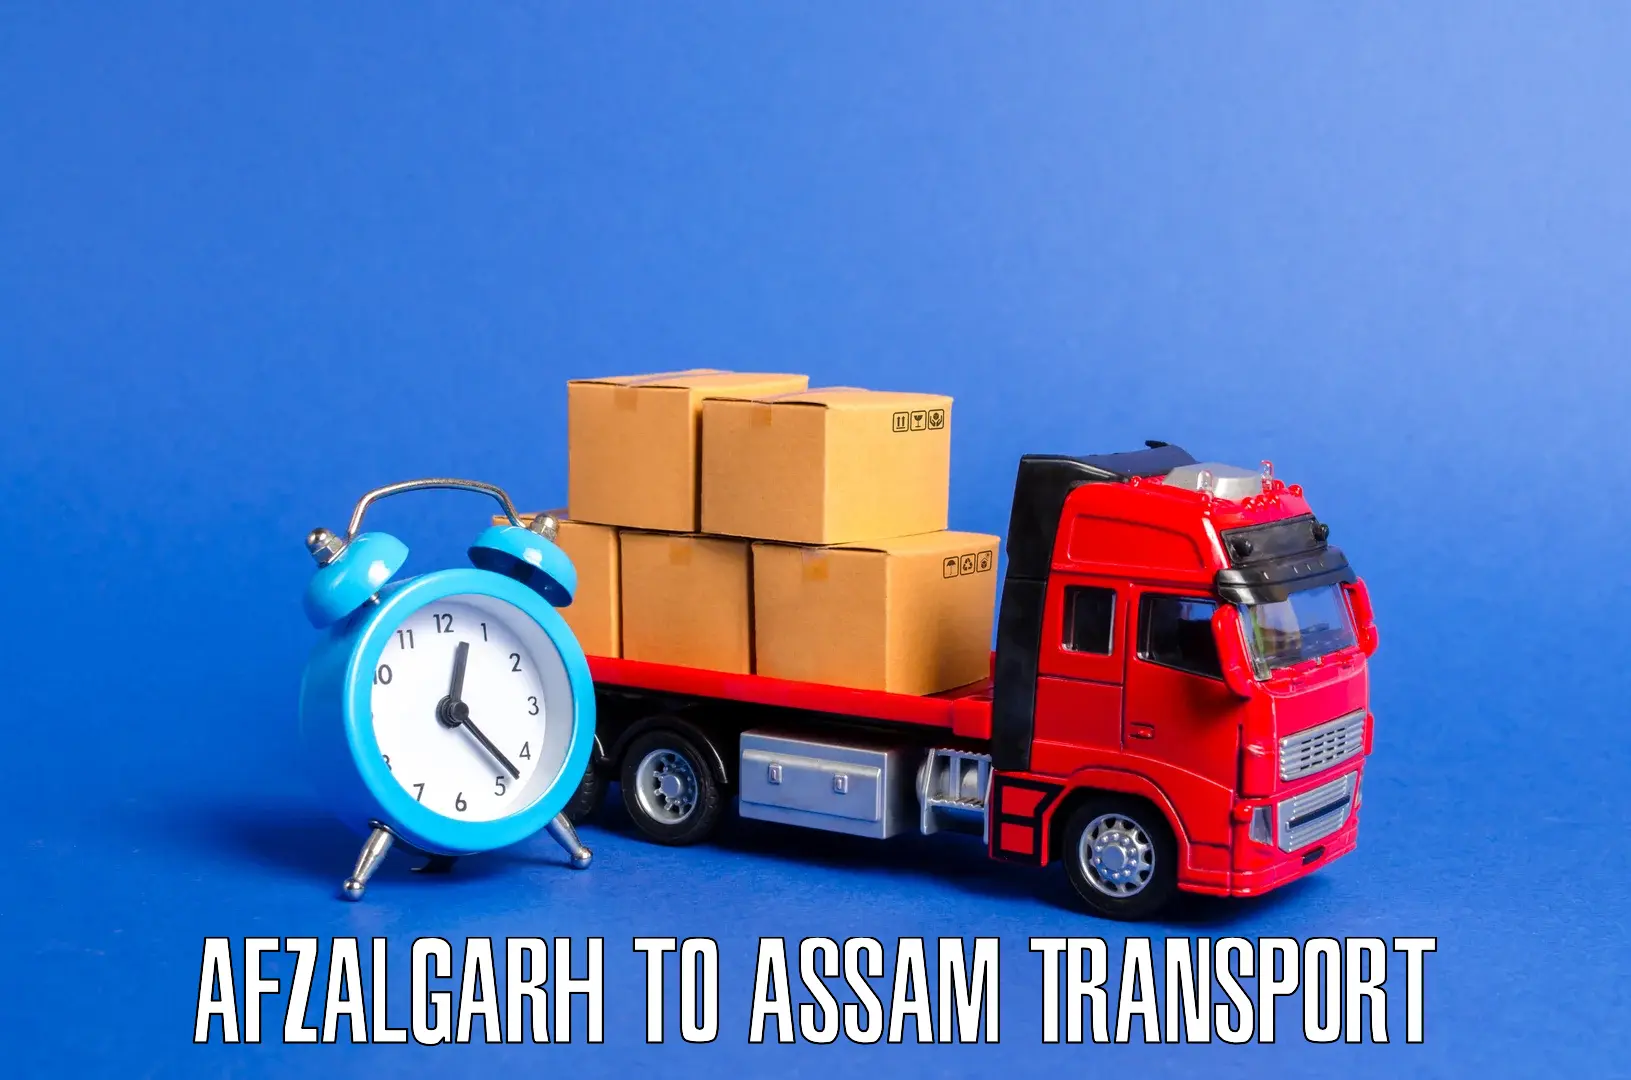 Transportation services Afzalgarh to Kalgachia